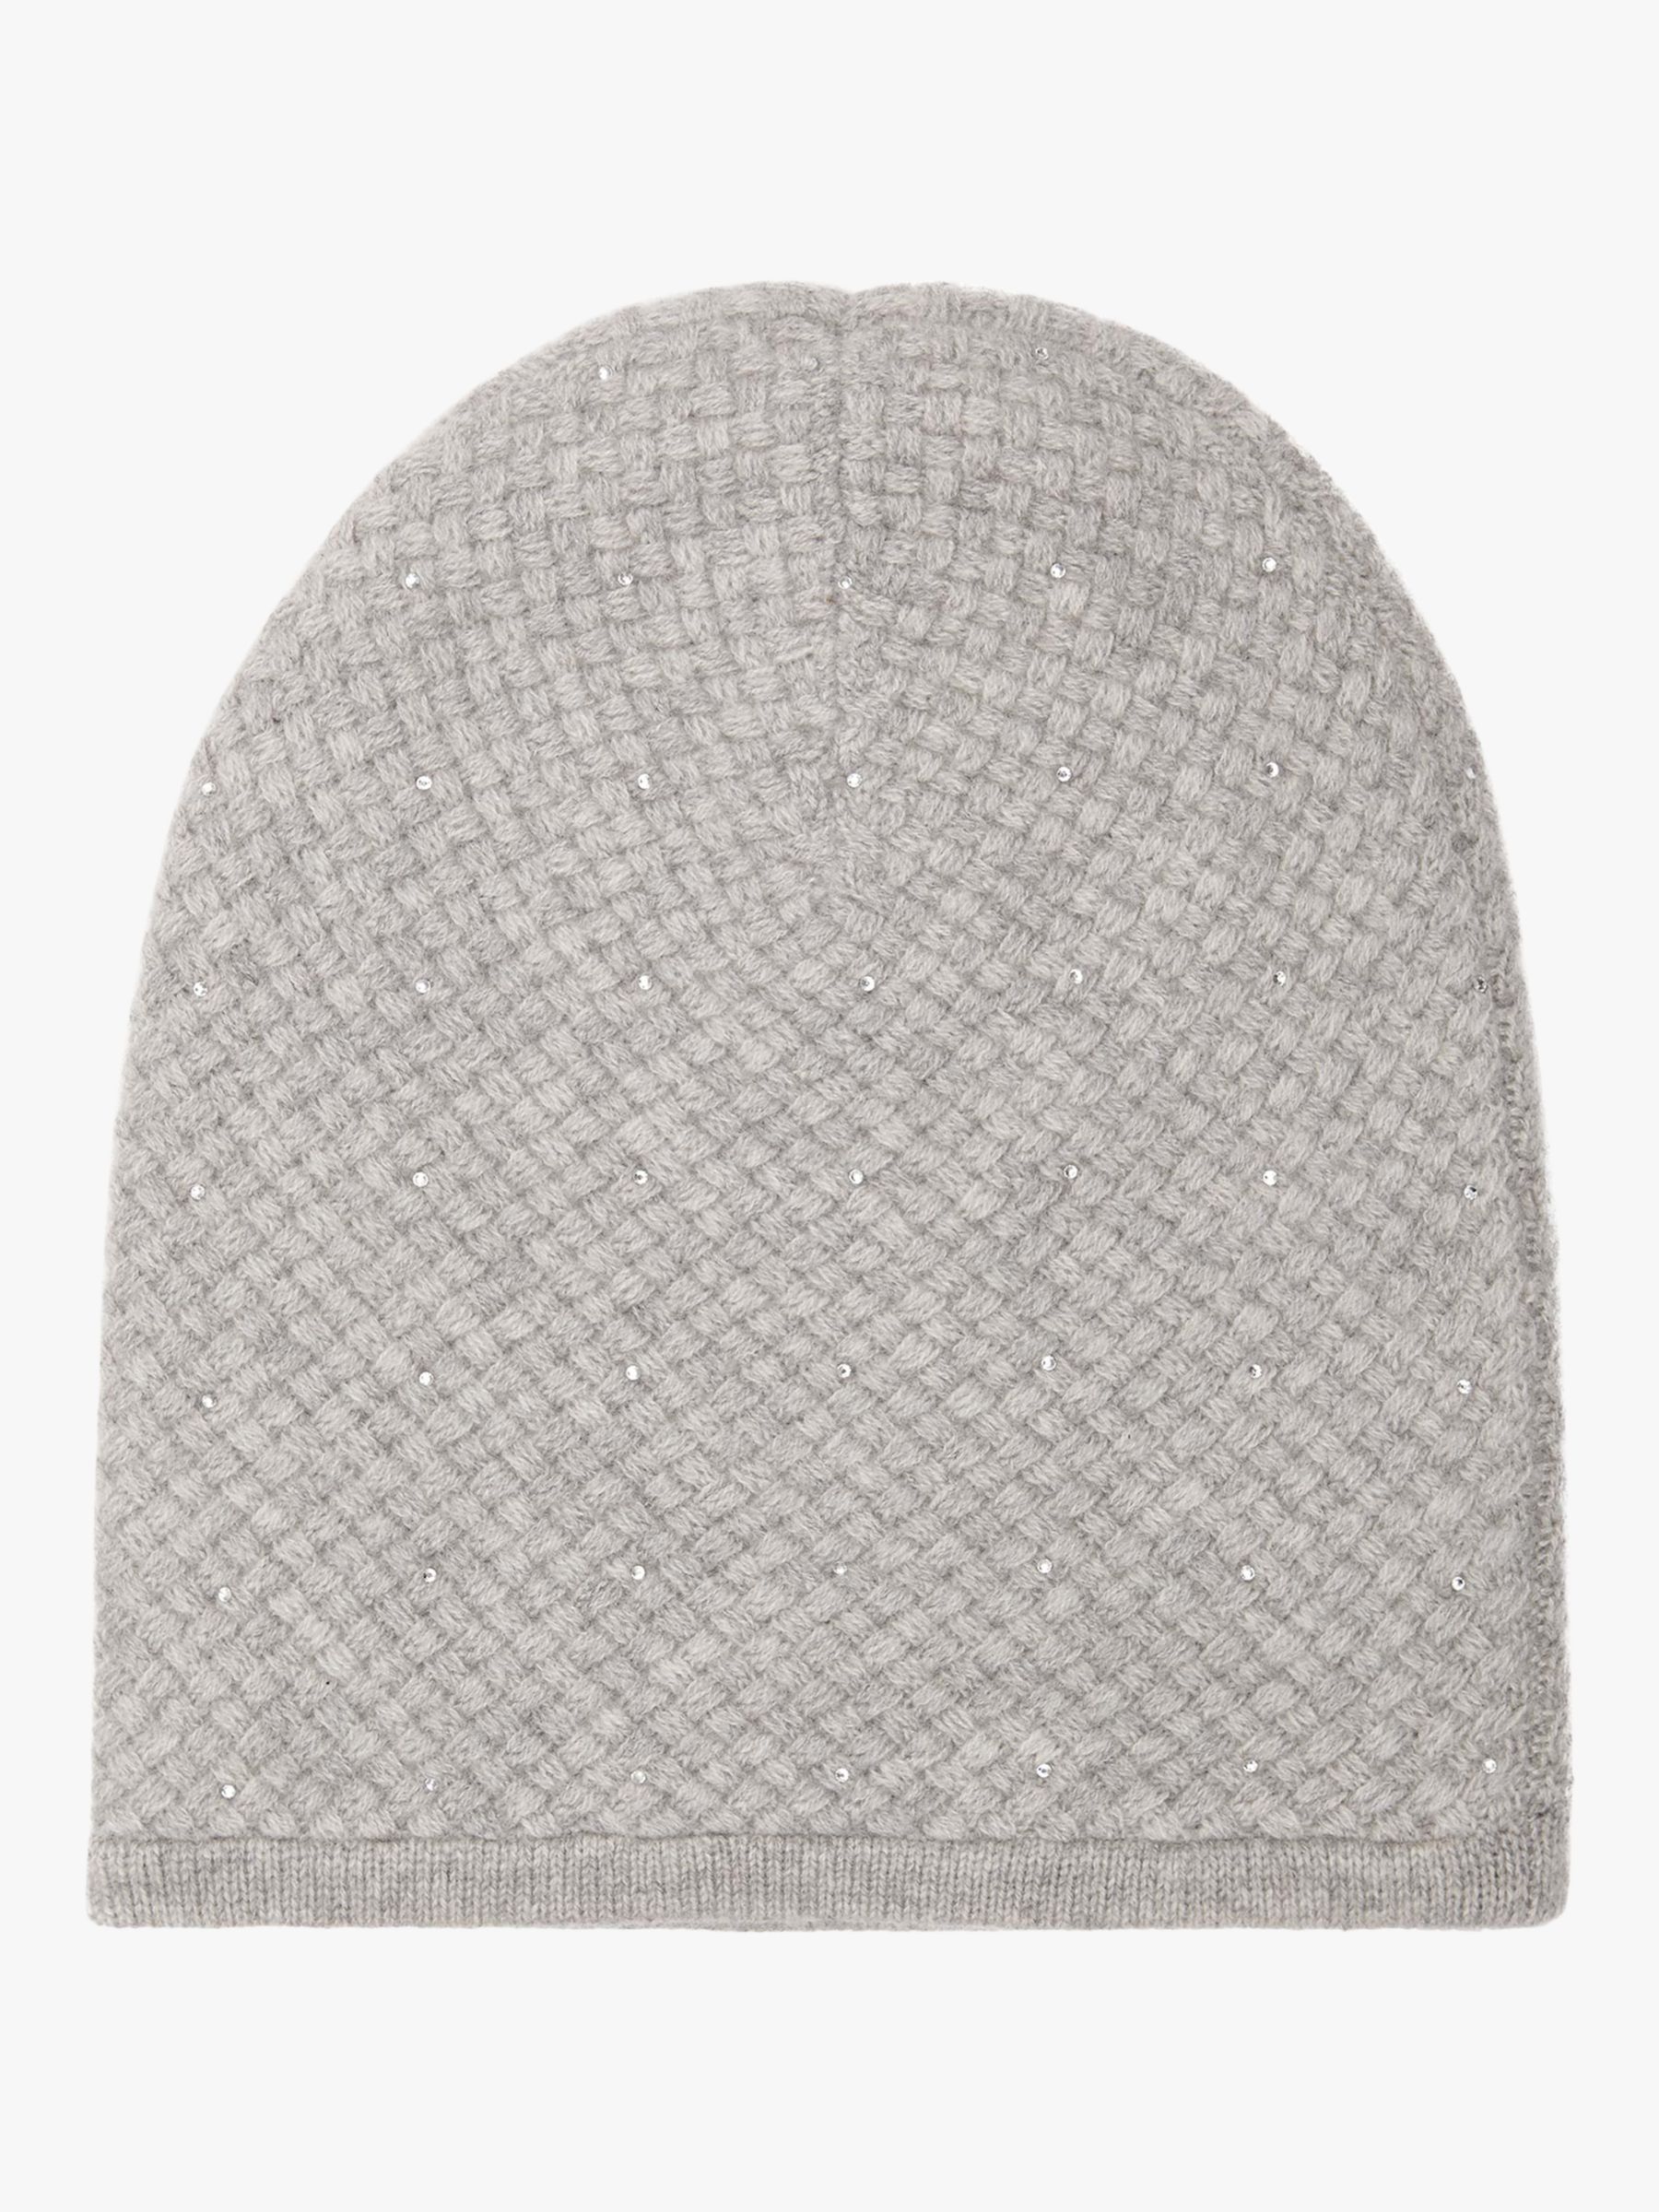 Reiss Sabria Cashmere Beanie Hat, Grey